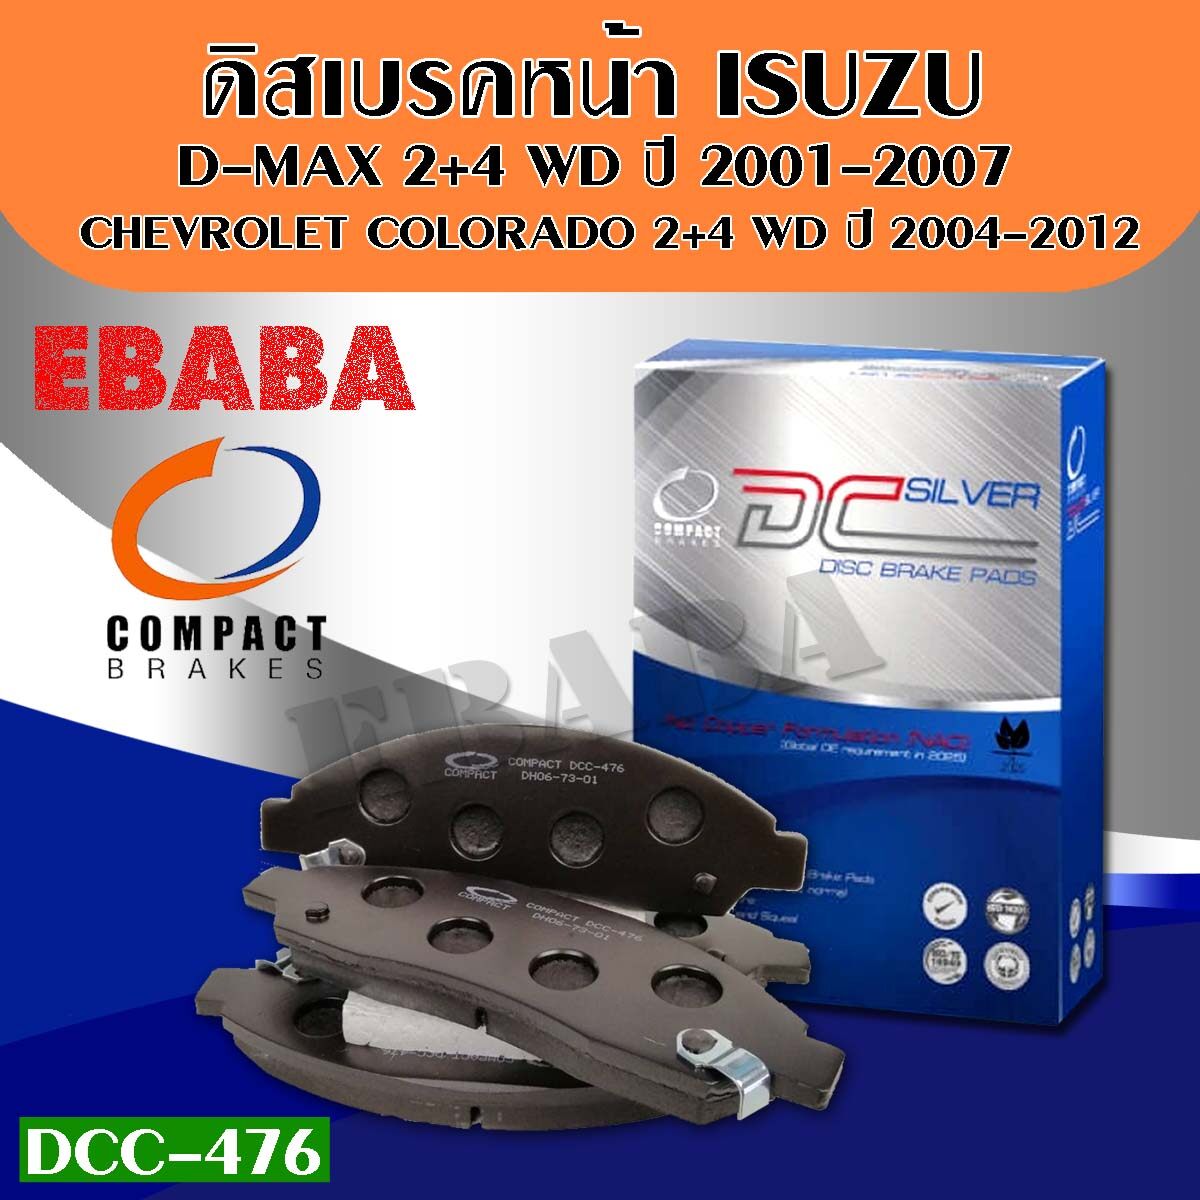 Compact Brakes ผ้าเบรคหน้าสำหรับ ISUZU DMAX 2WD-4WD ปี 01-07 (ผ้าเบรก ดีแมก) DCC-476